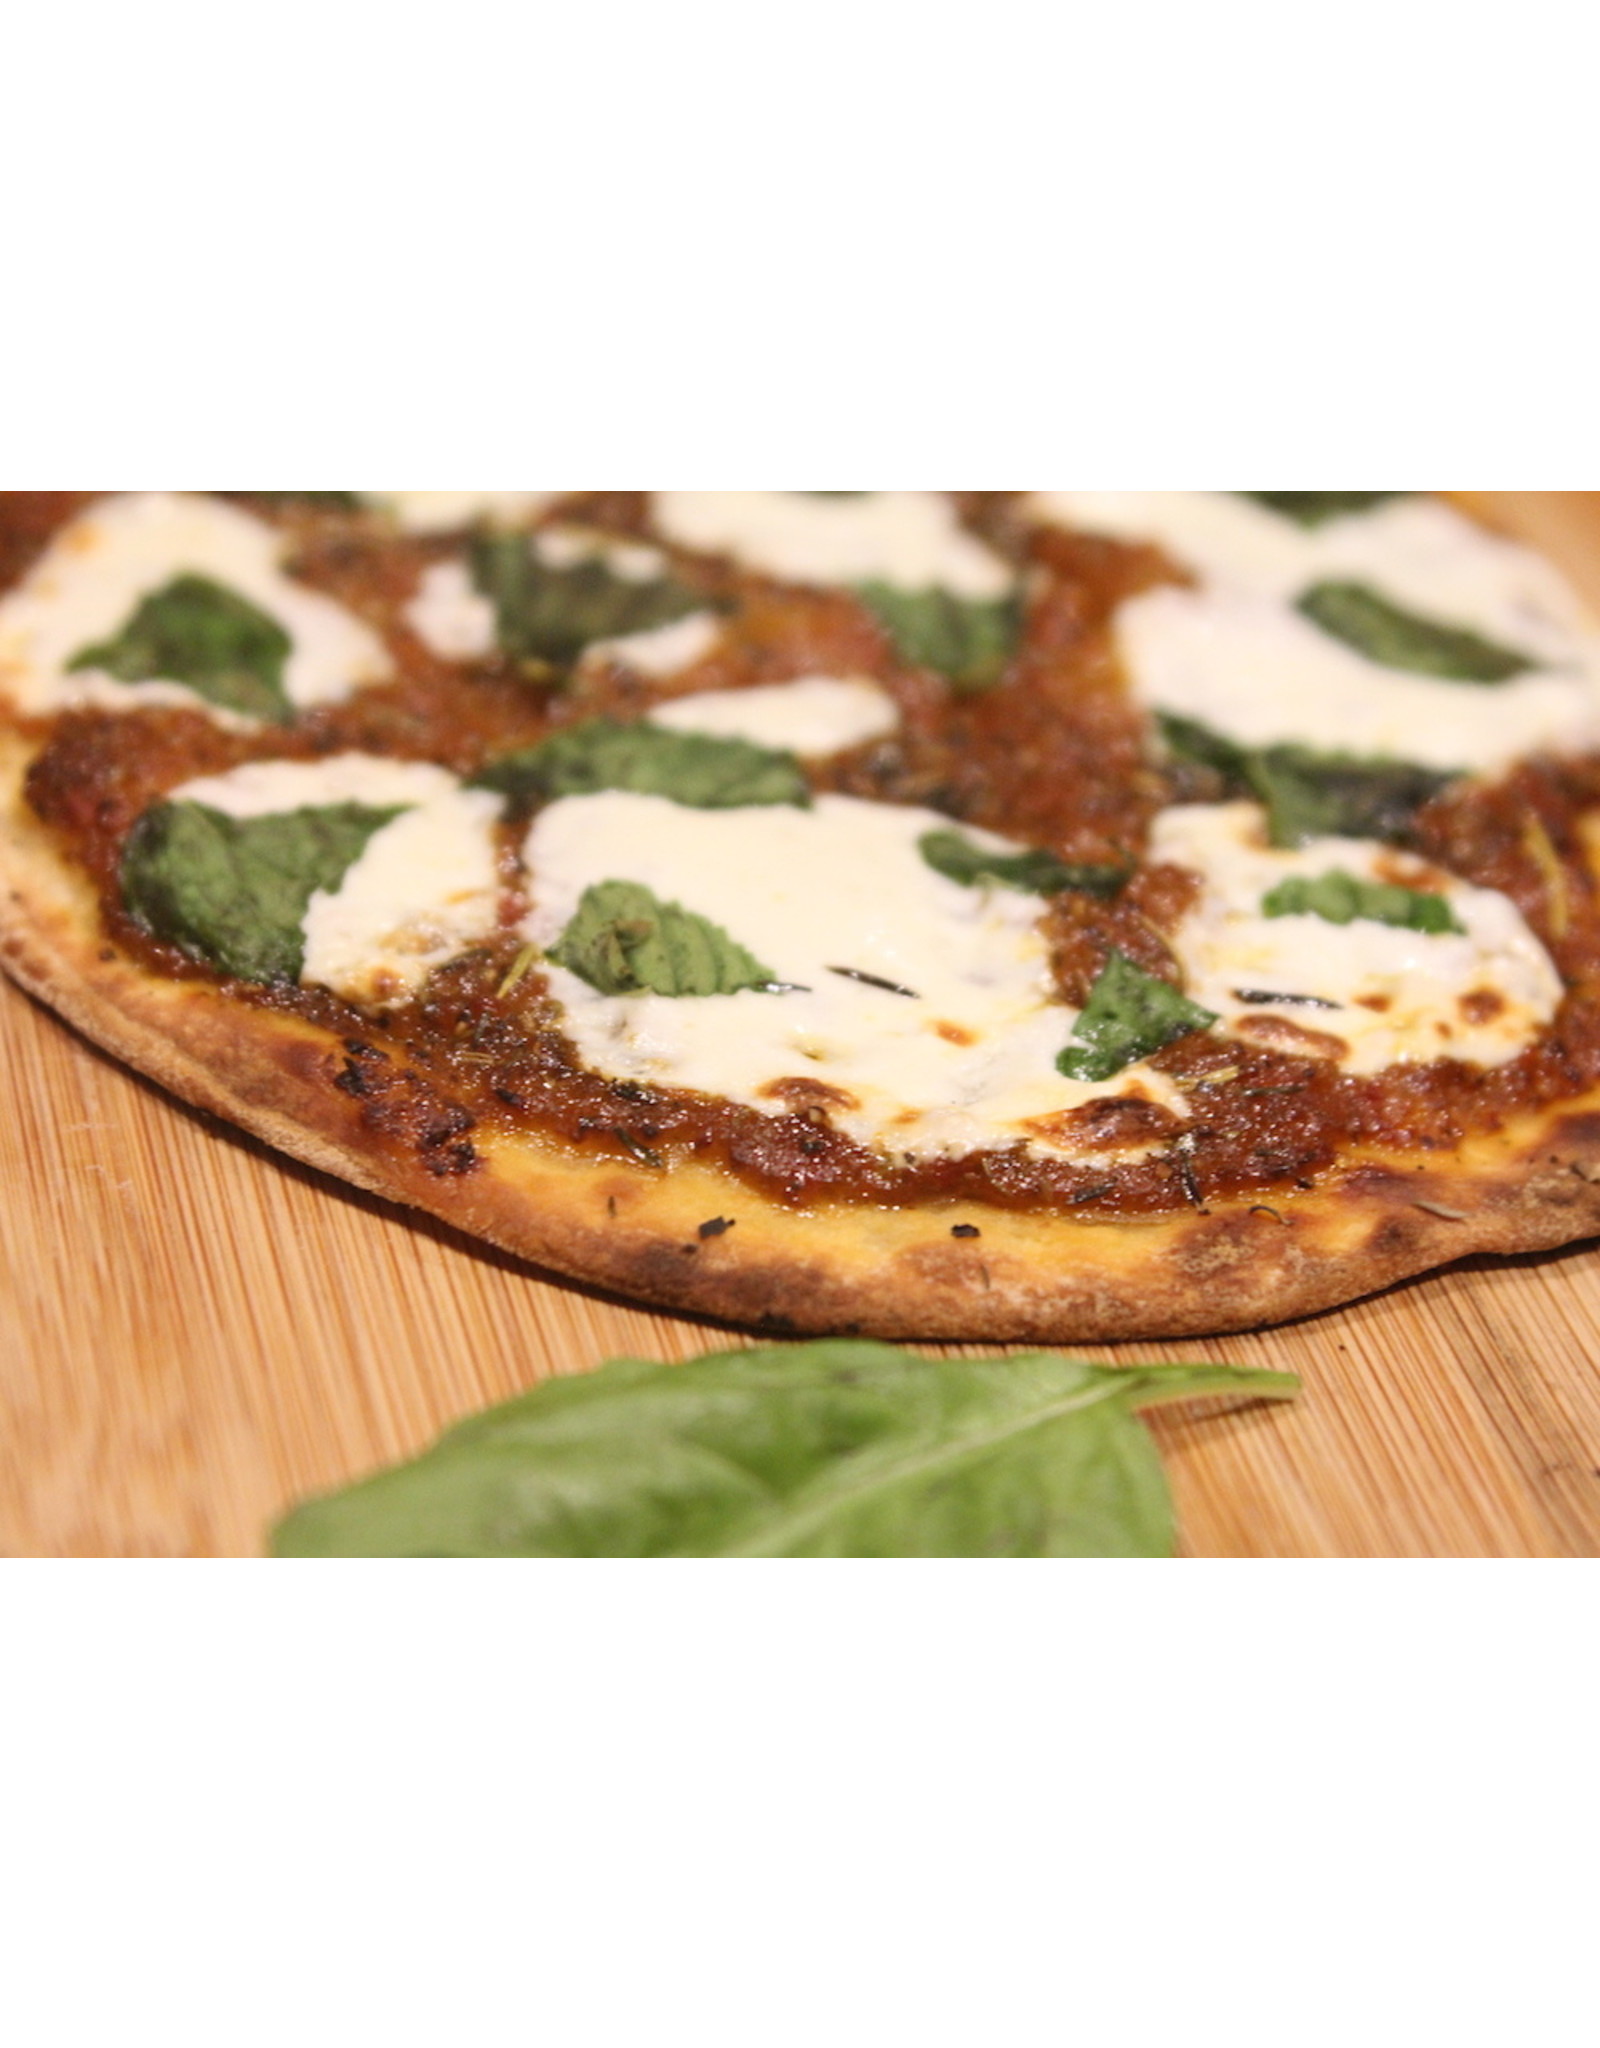 Wine Dining™ TO-GO TO-GO Traditional Neapolitan Bufala (Buffalo) Margherita ~ Artisan Neapolitan Style Gourmet Pizza